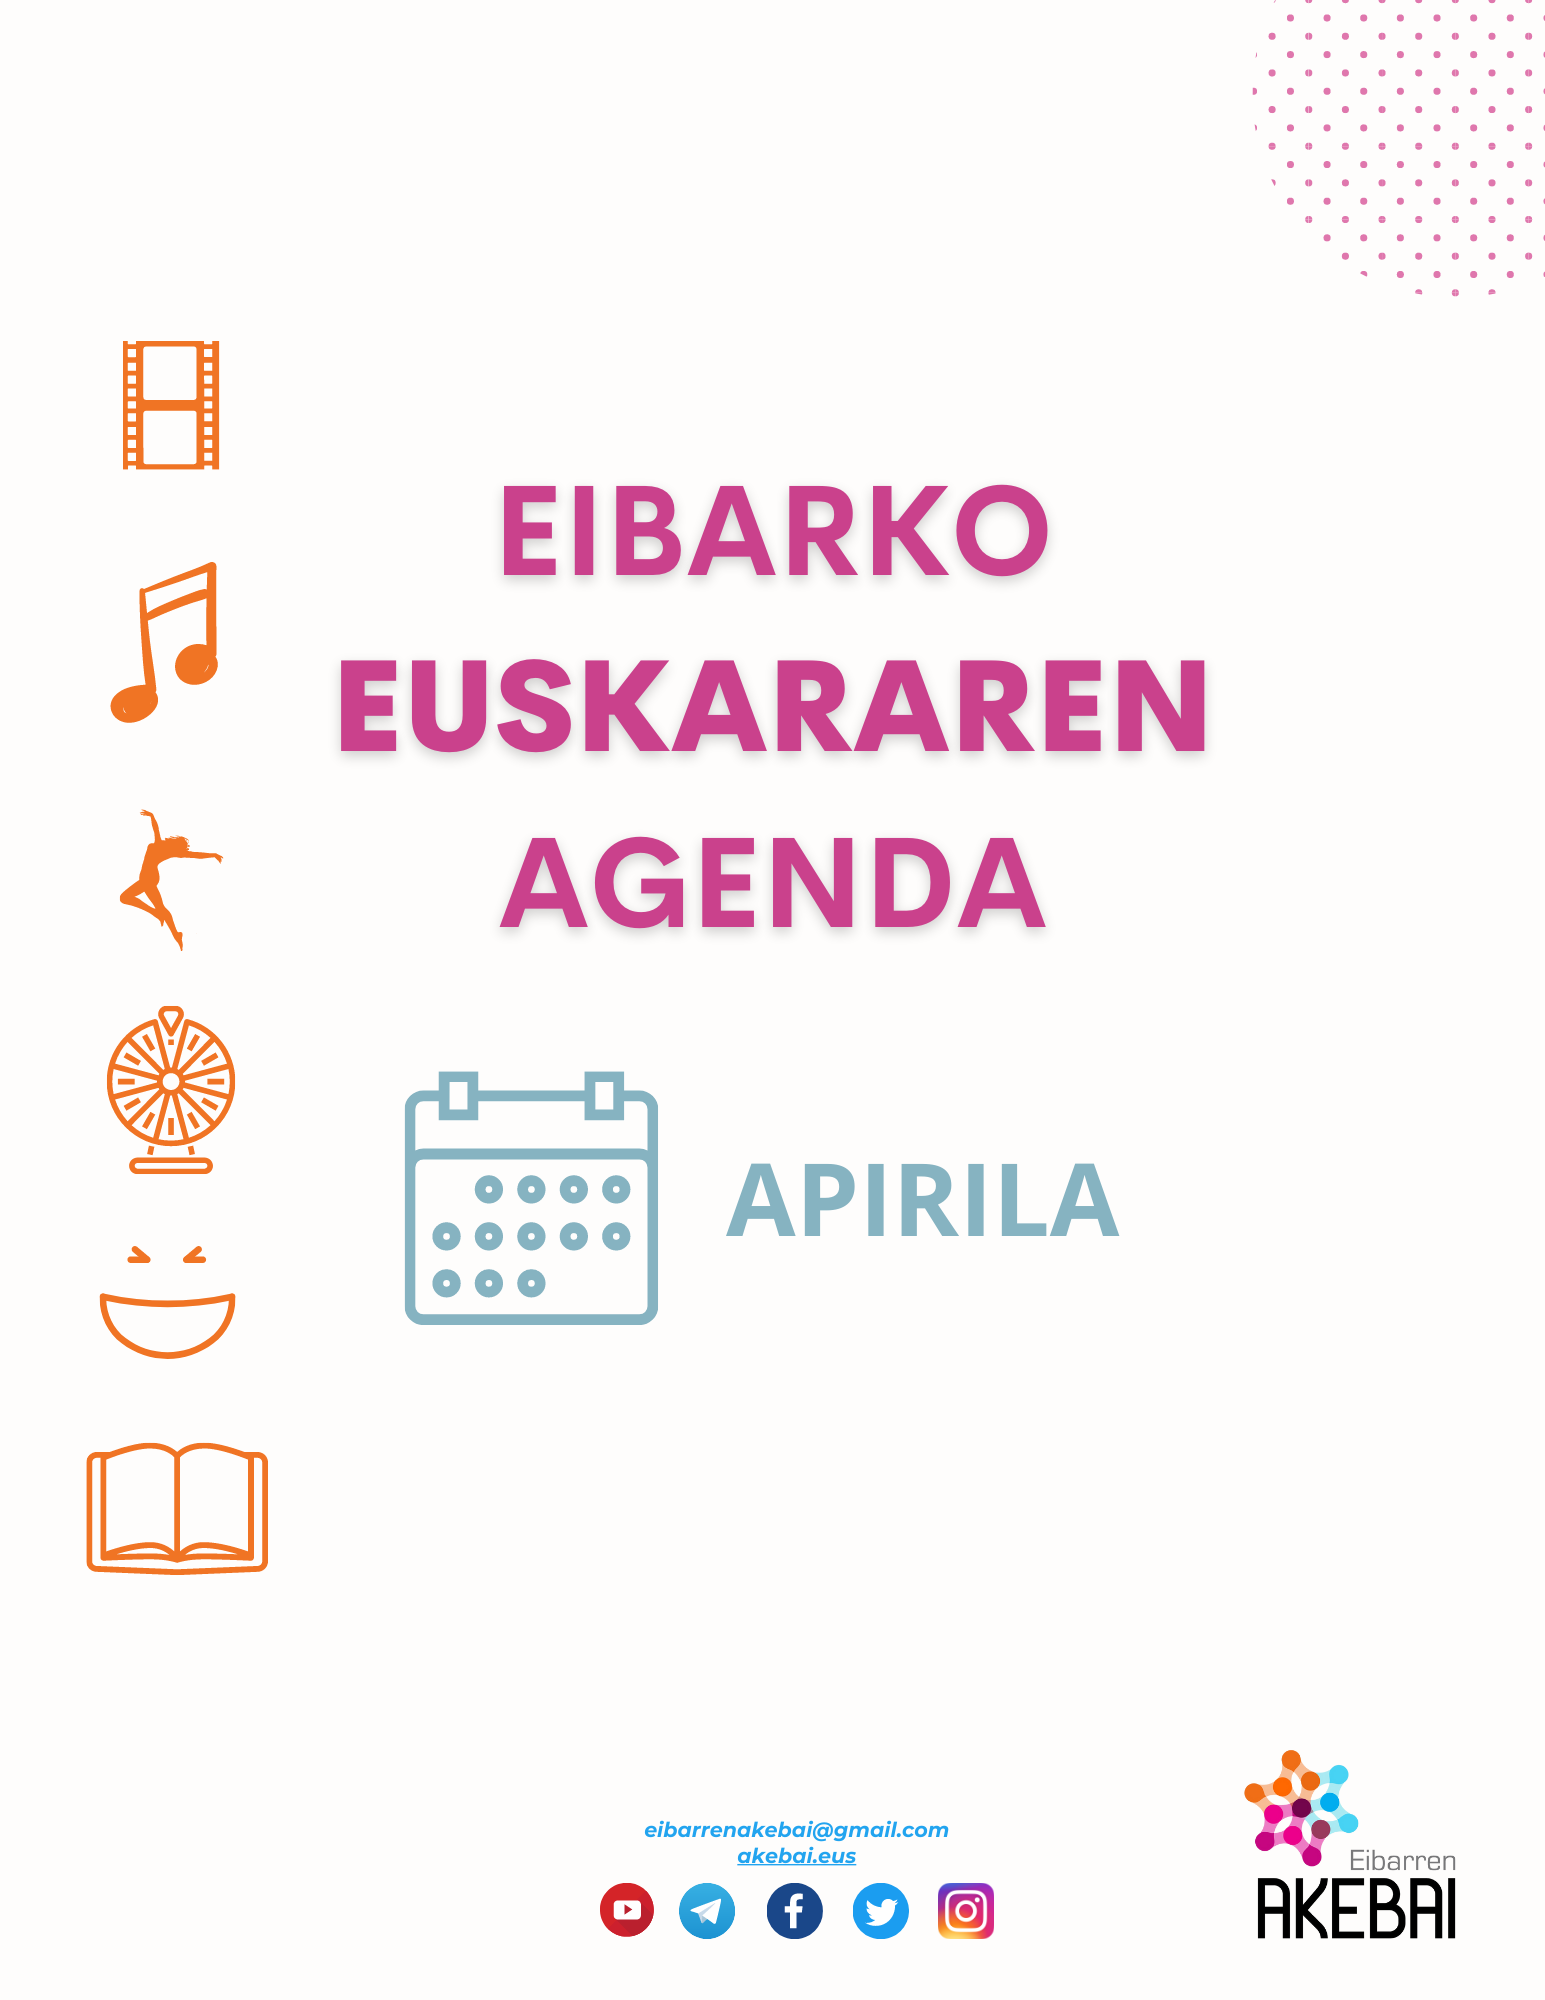 Eibarko euskararen agenda: abril